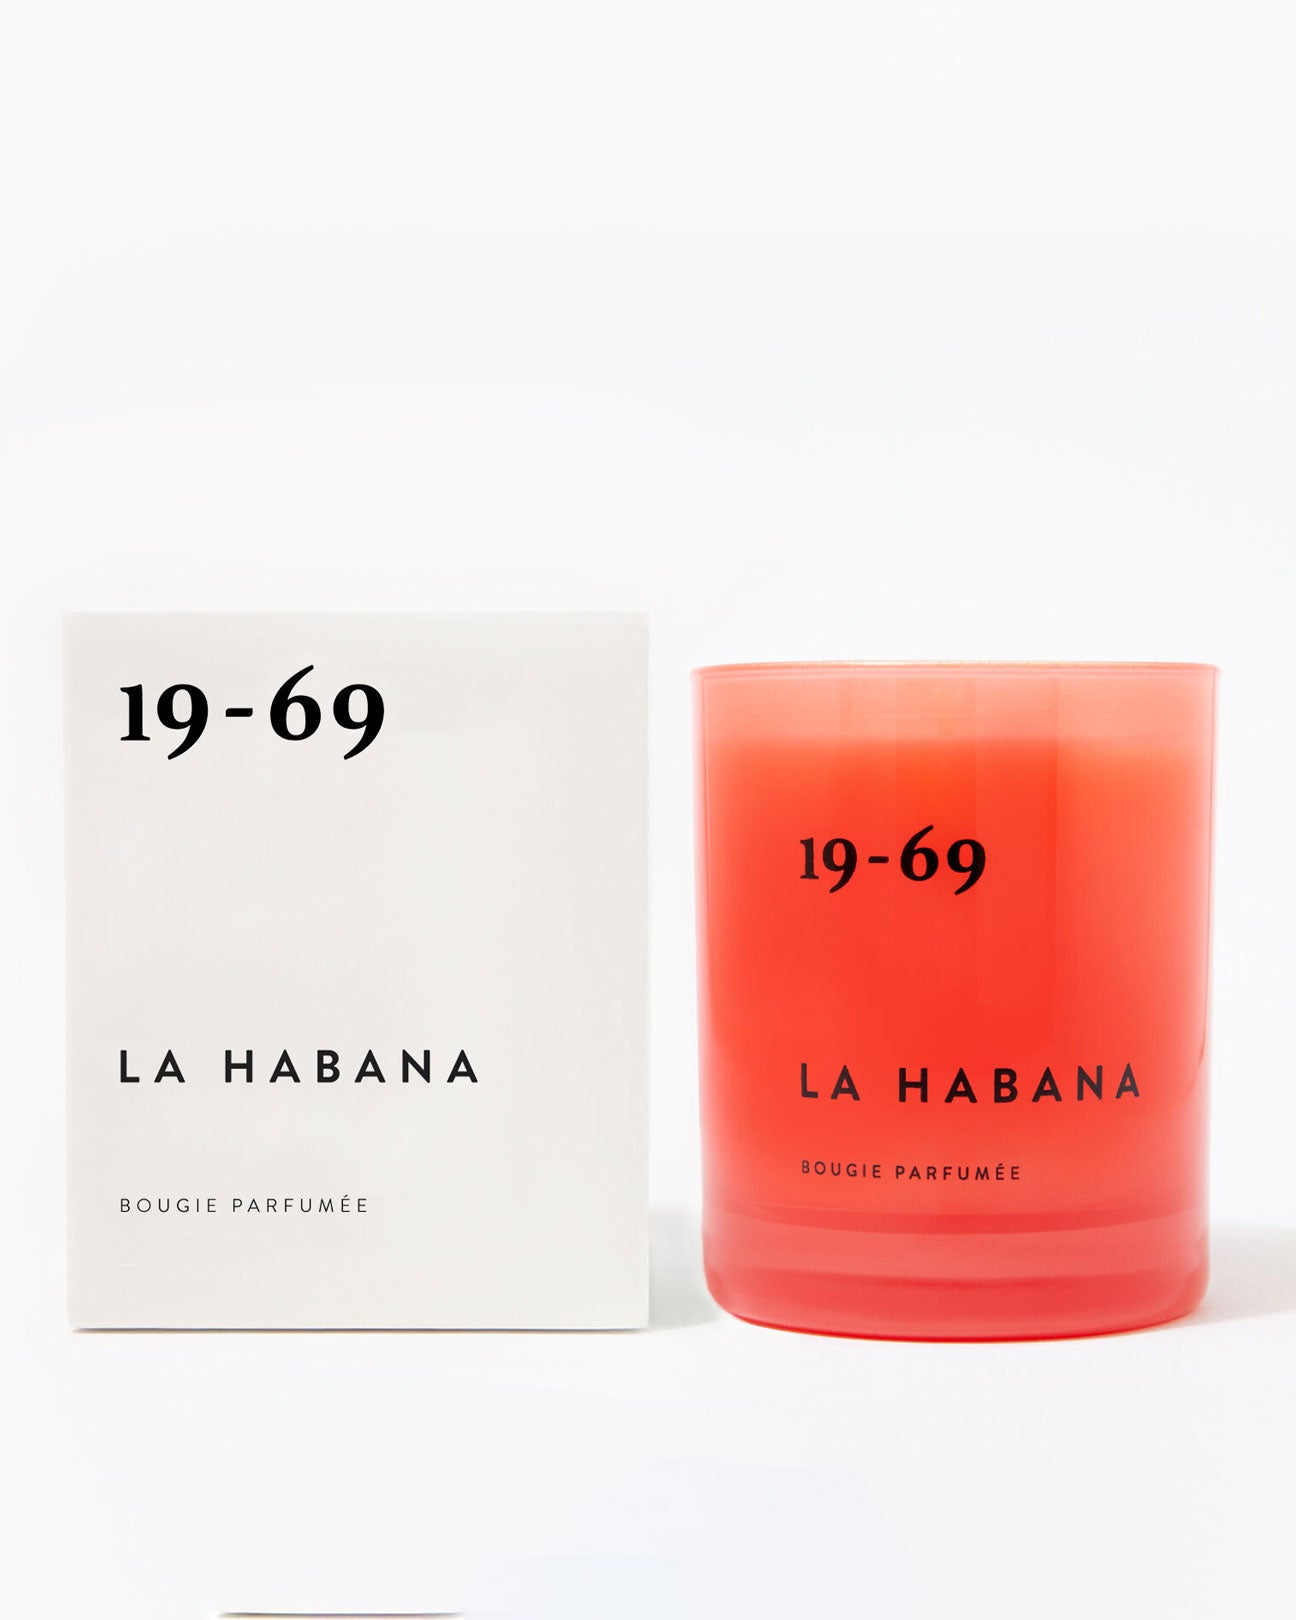 19-69 Candle in La Habana